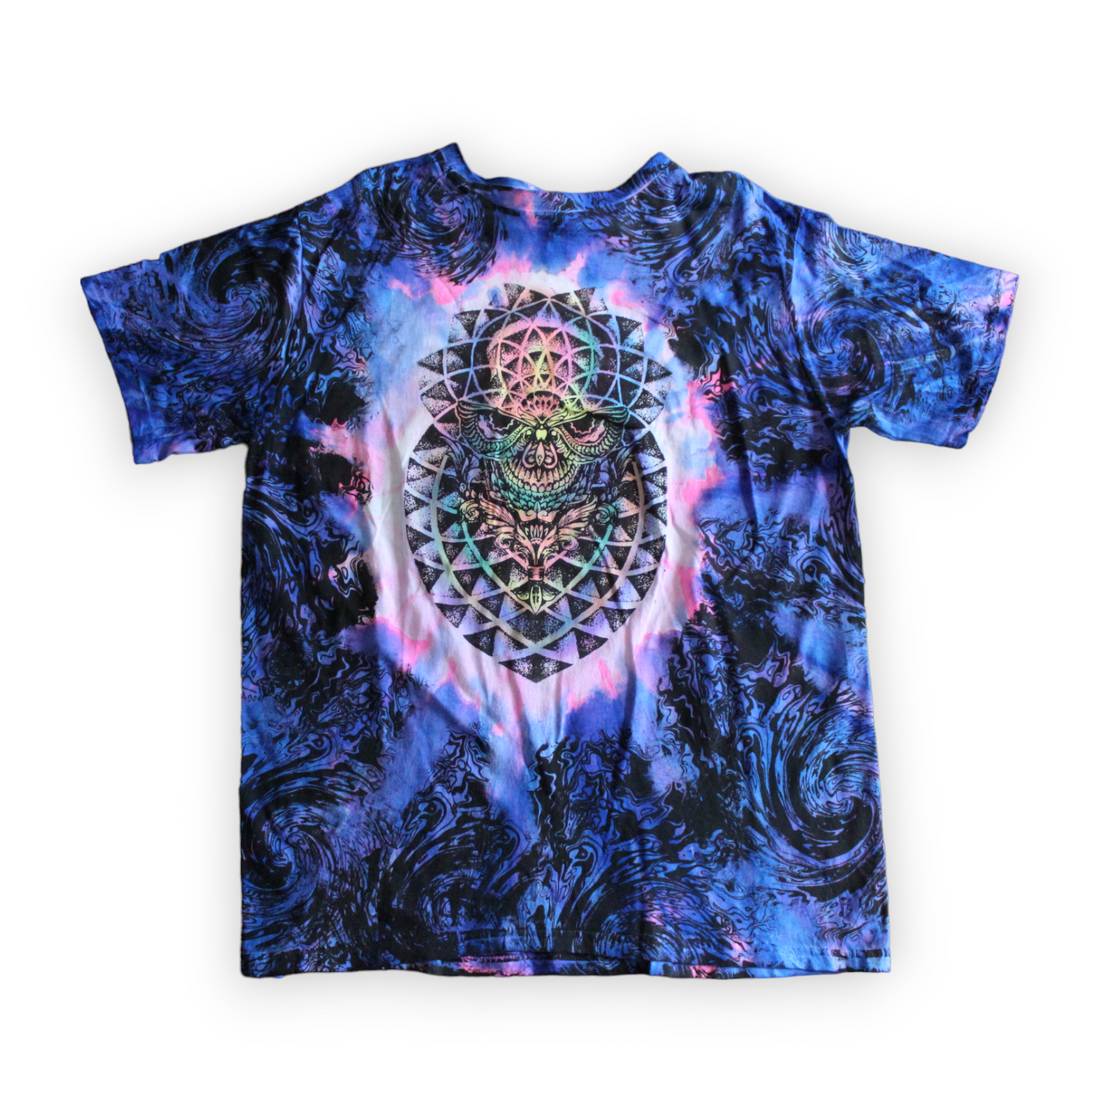 Cosmic skull sacred geometry t-shirt 